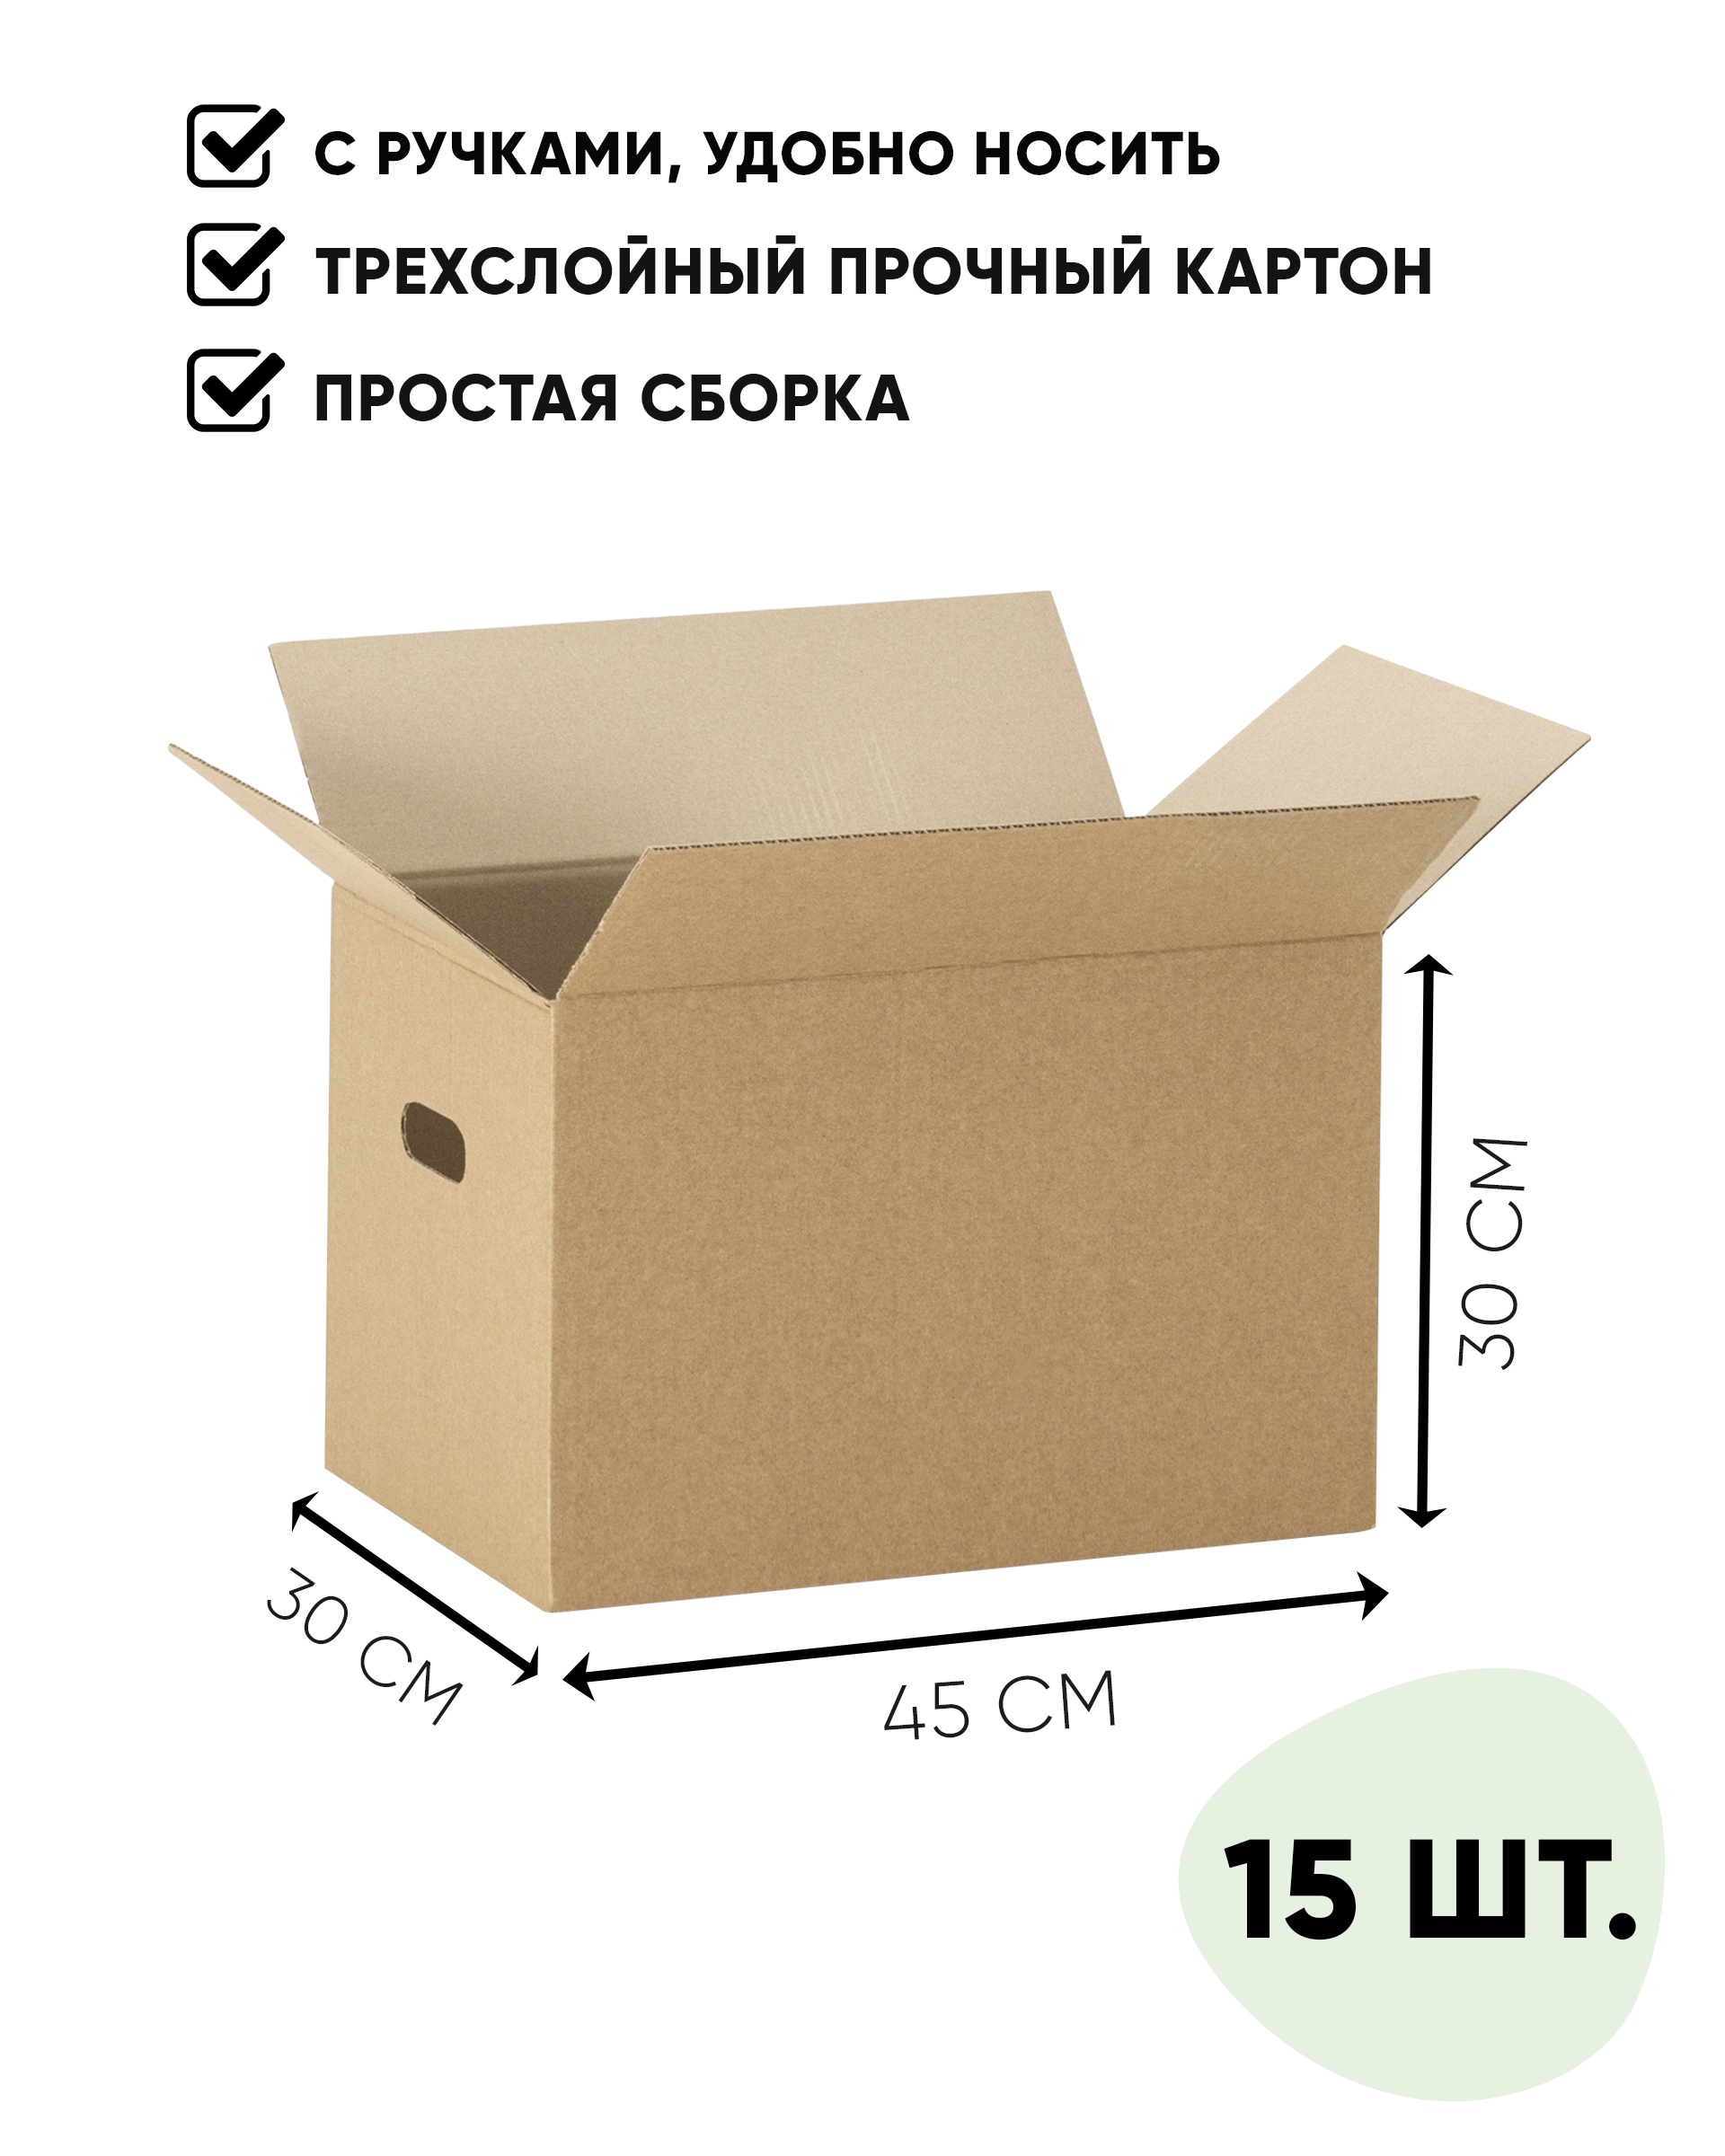 Размеры коробок для переезда